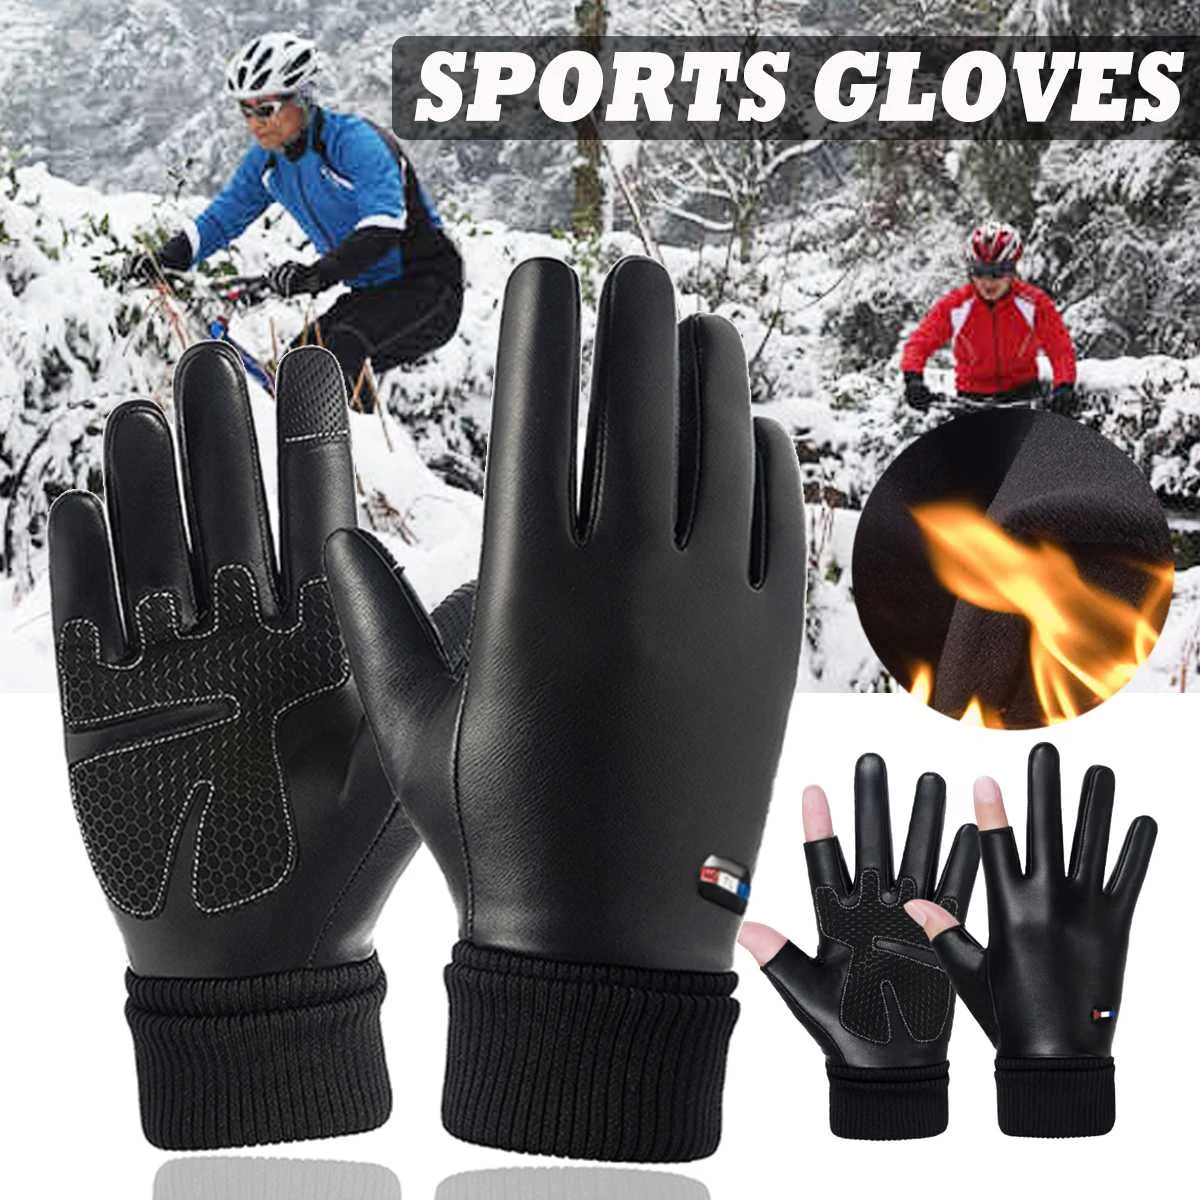 

Теплые лыжные перчатки, зимние флисовые водонепроницаемые перчатки для сноуборда, снежные мотоциклетные перчатки для катания на лыжах, спо...